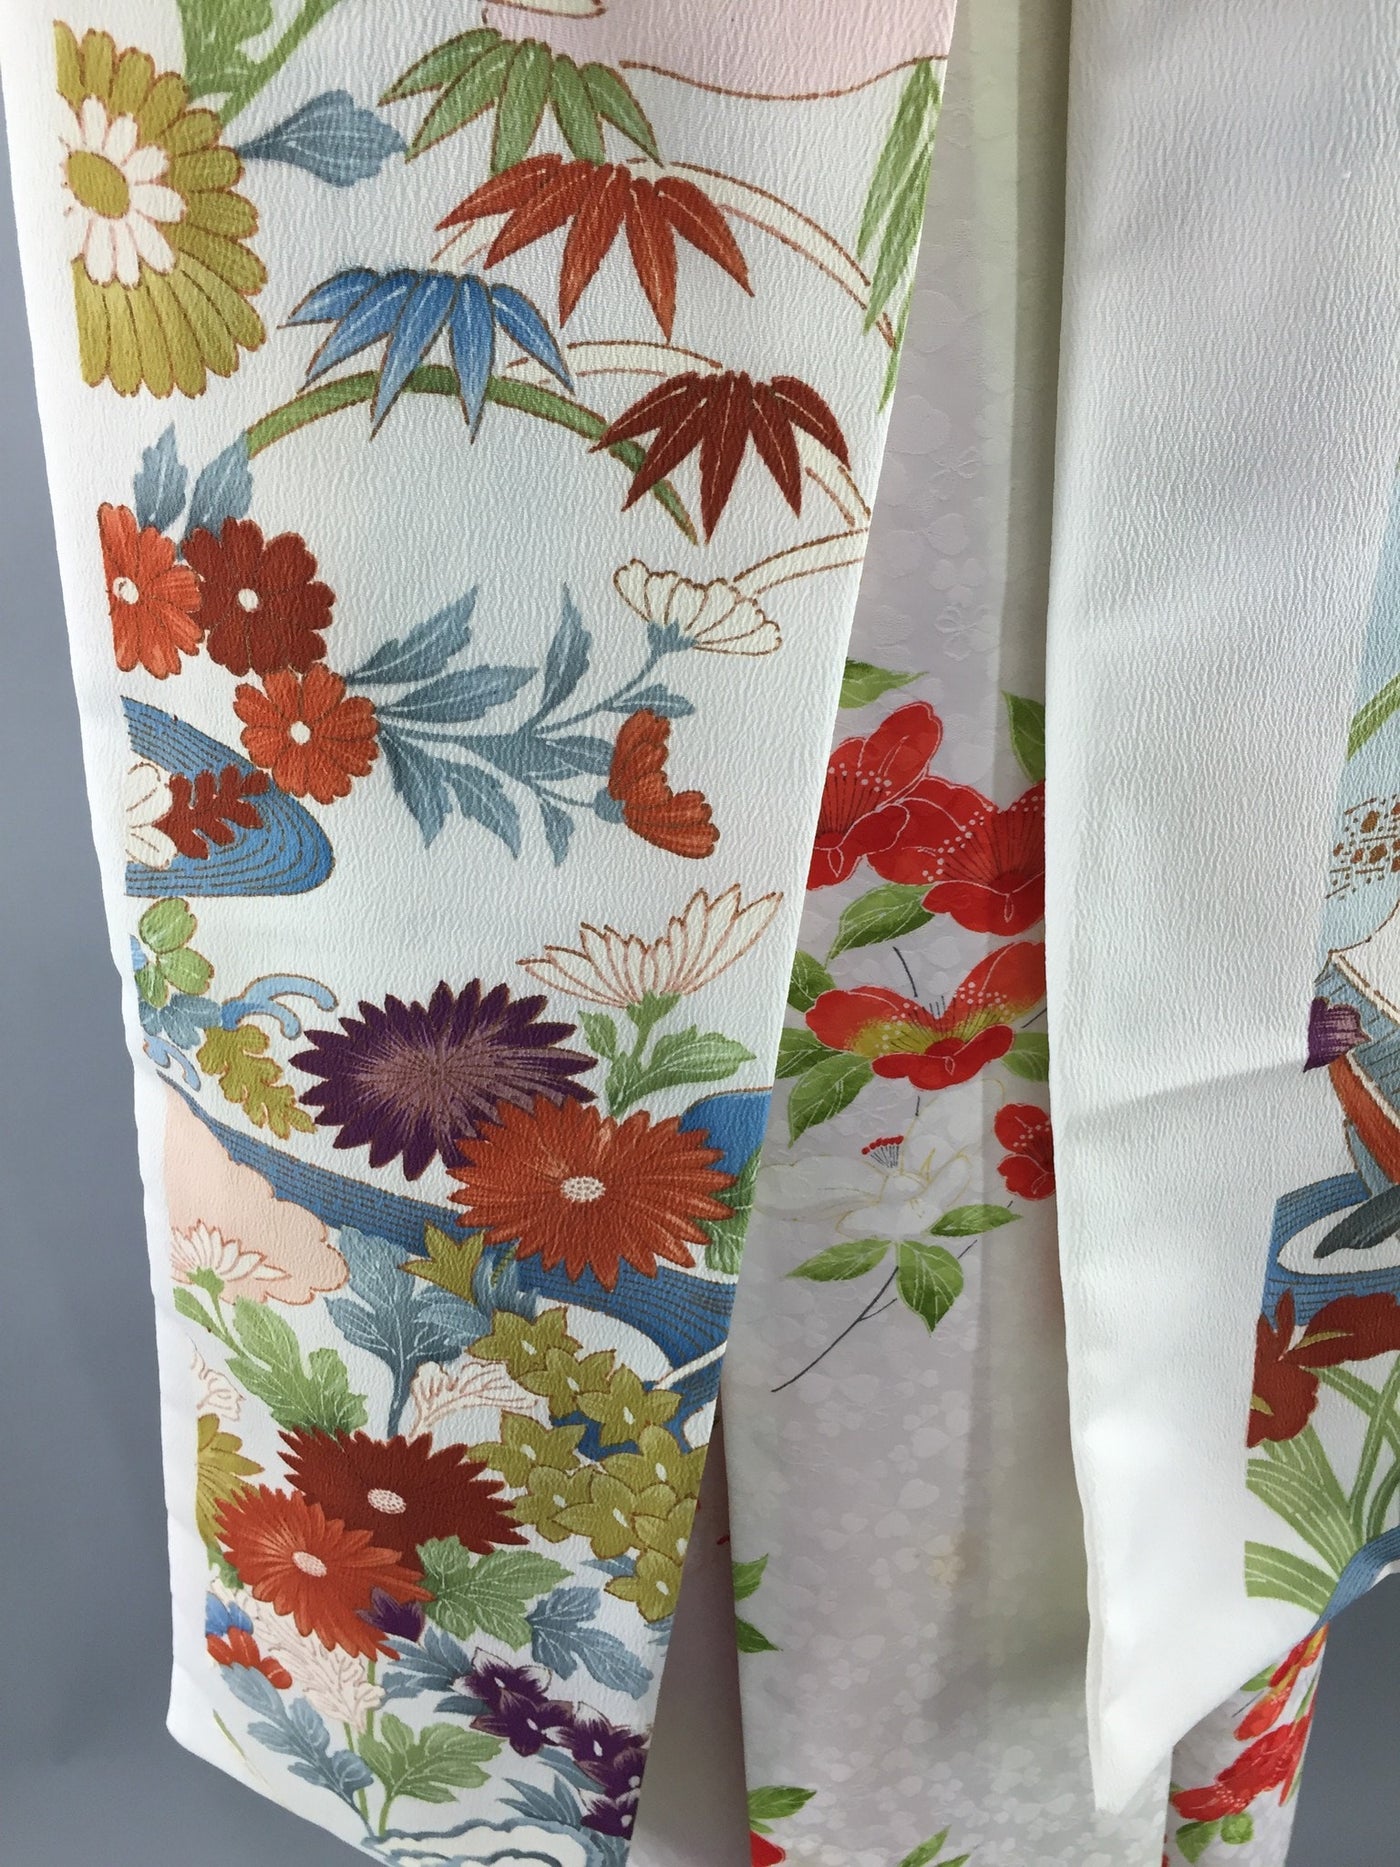 Vintage 1980s Kimono Robe / Red White Floral Print - ThisBlueBird